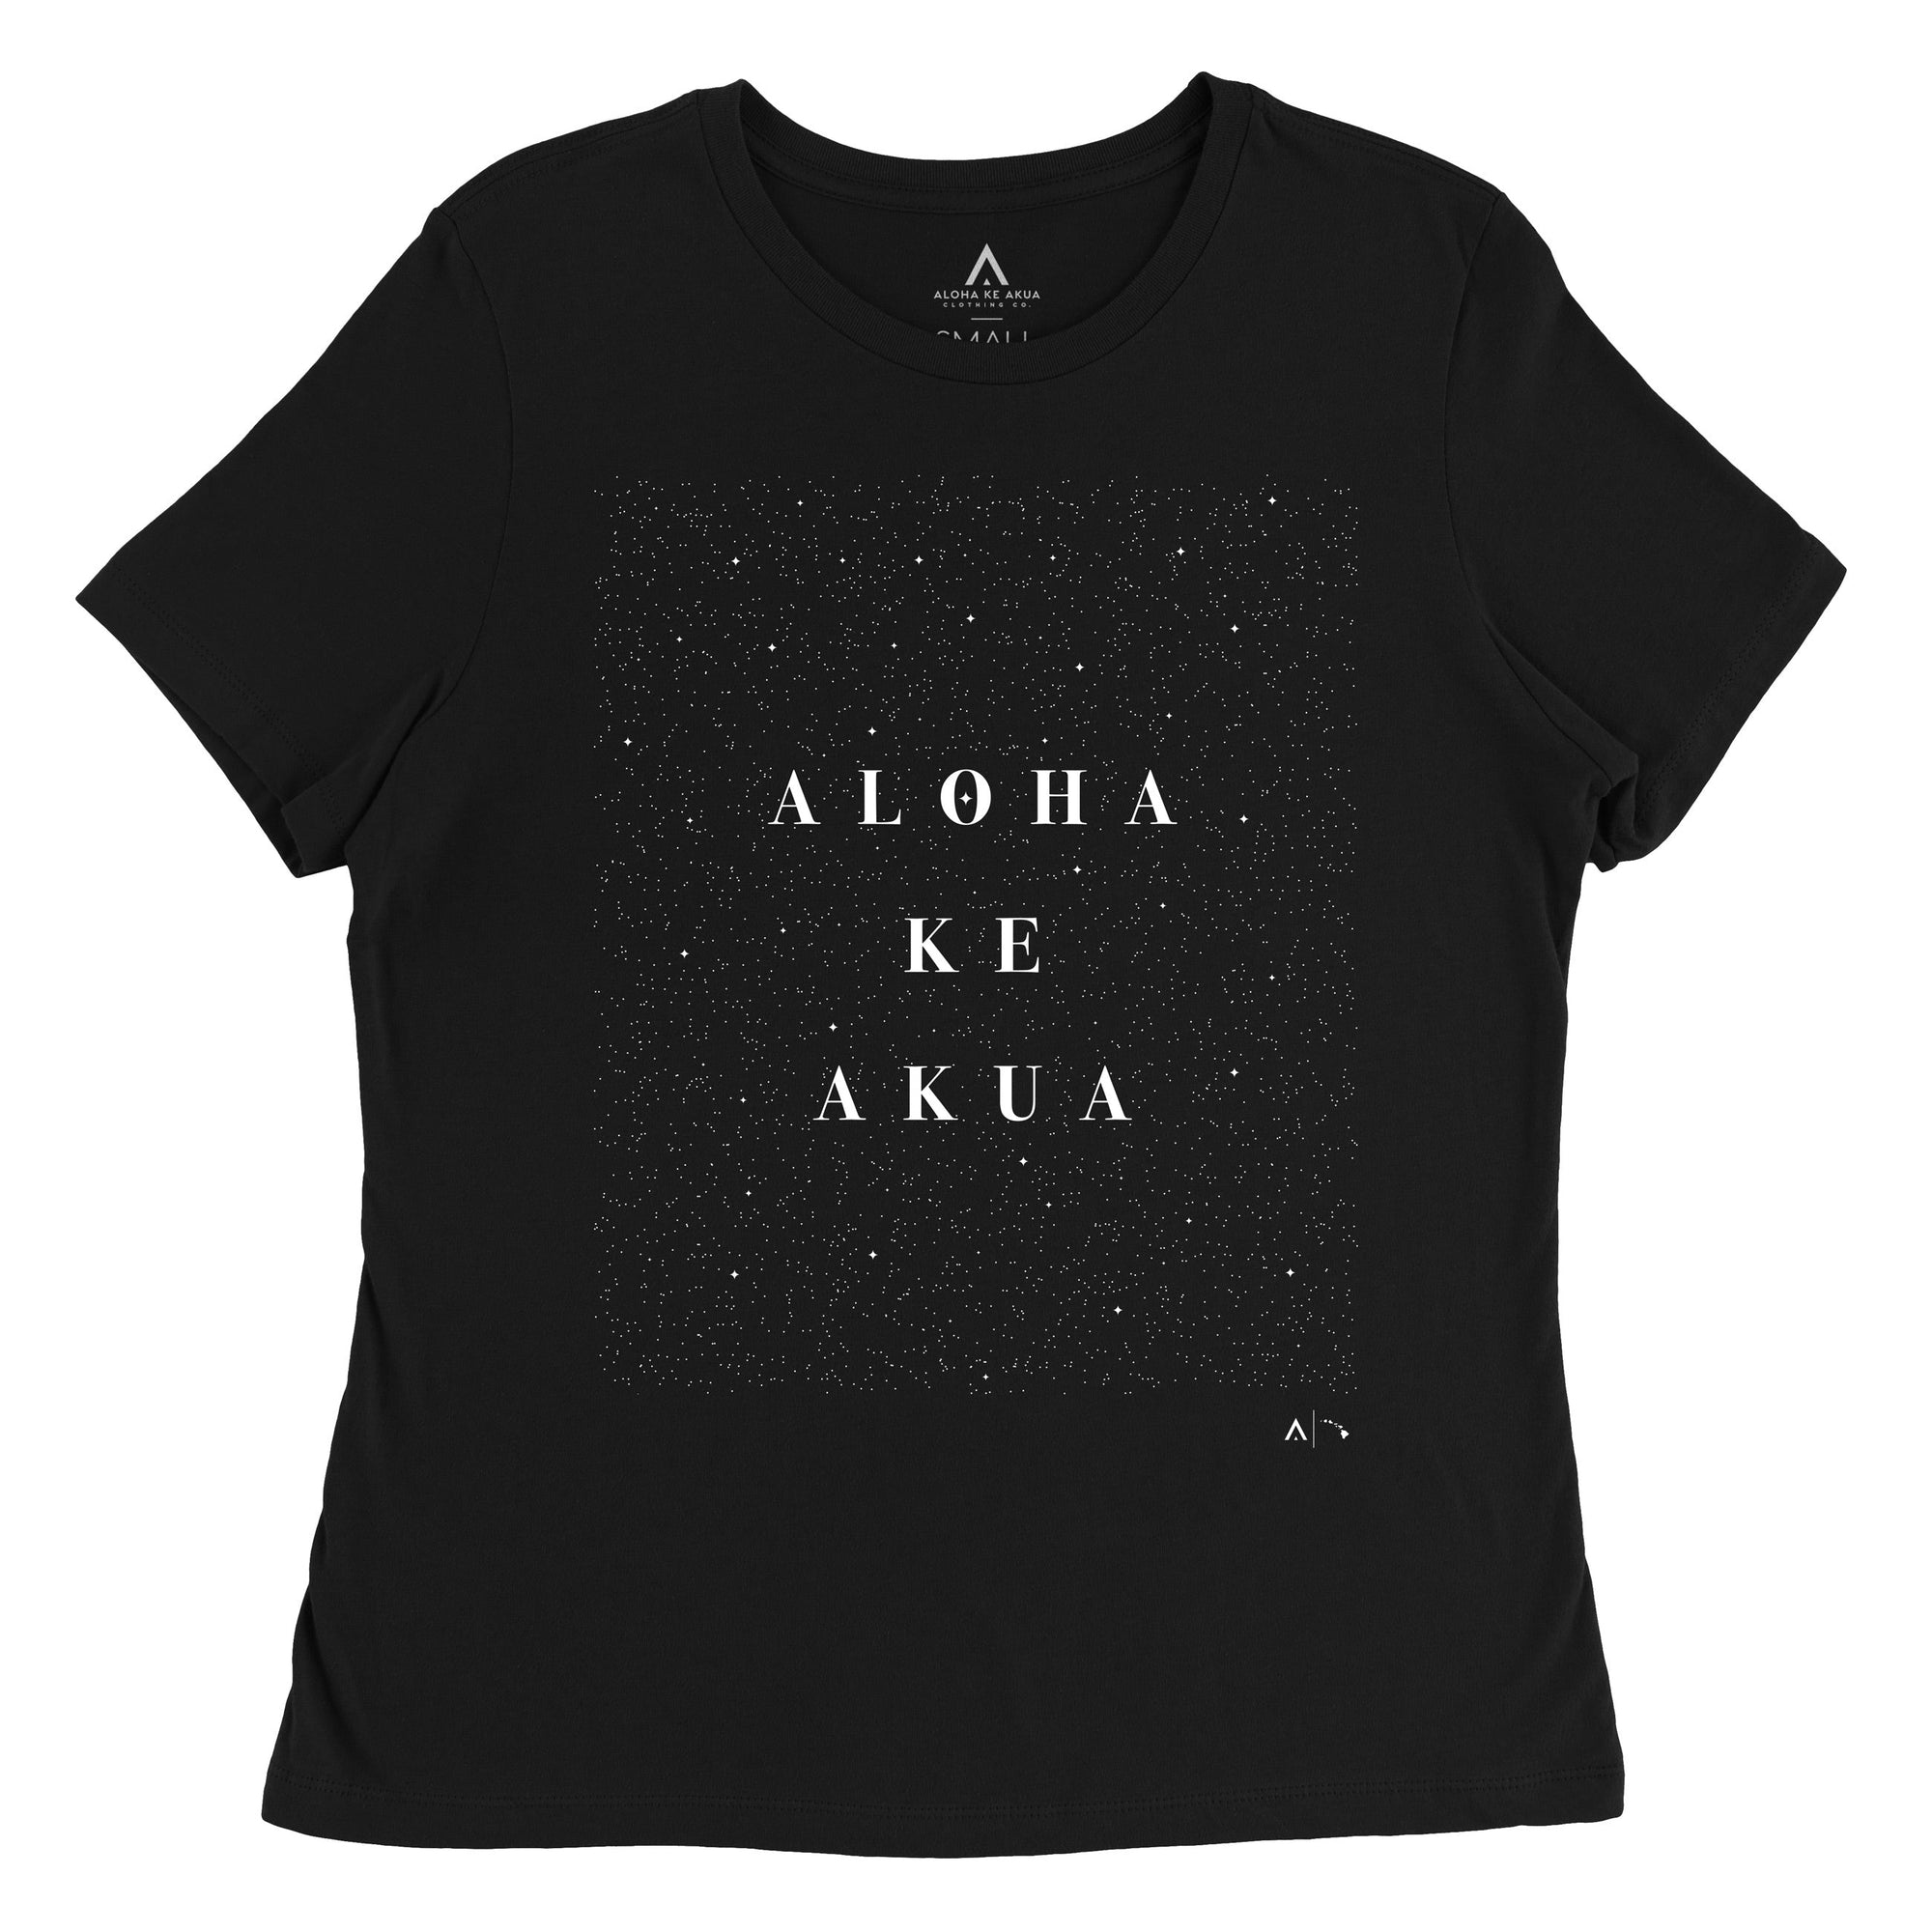 Pop-Up Mākeke - Aloha Ke Akua Clothing - Nāhōkū Women's Short Sleeve T-Shirt - Black - Front View